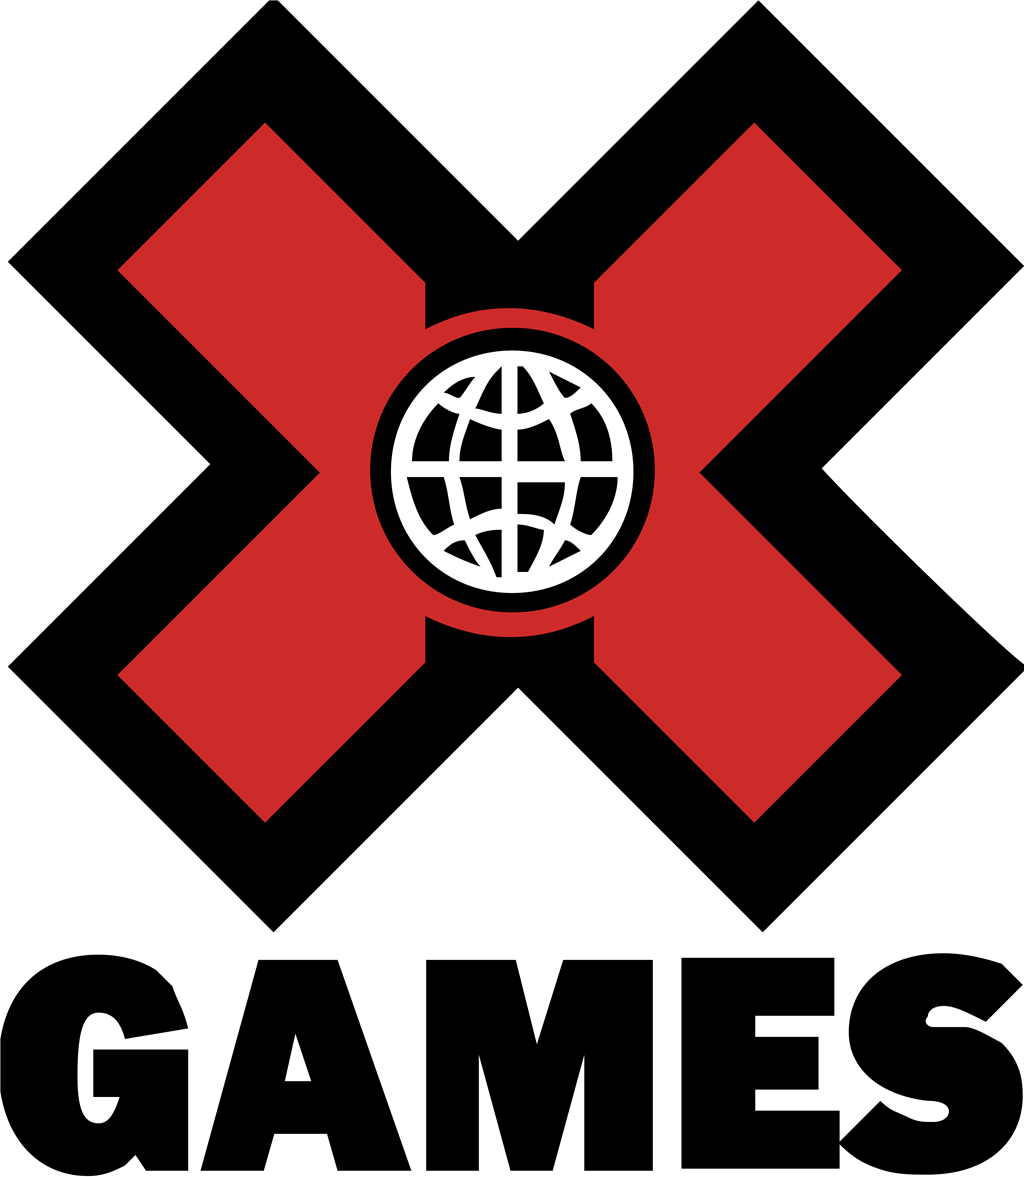 X Games logotype, transparent .png, medium, large